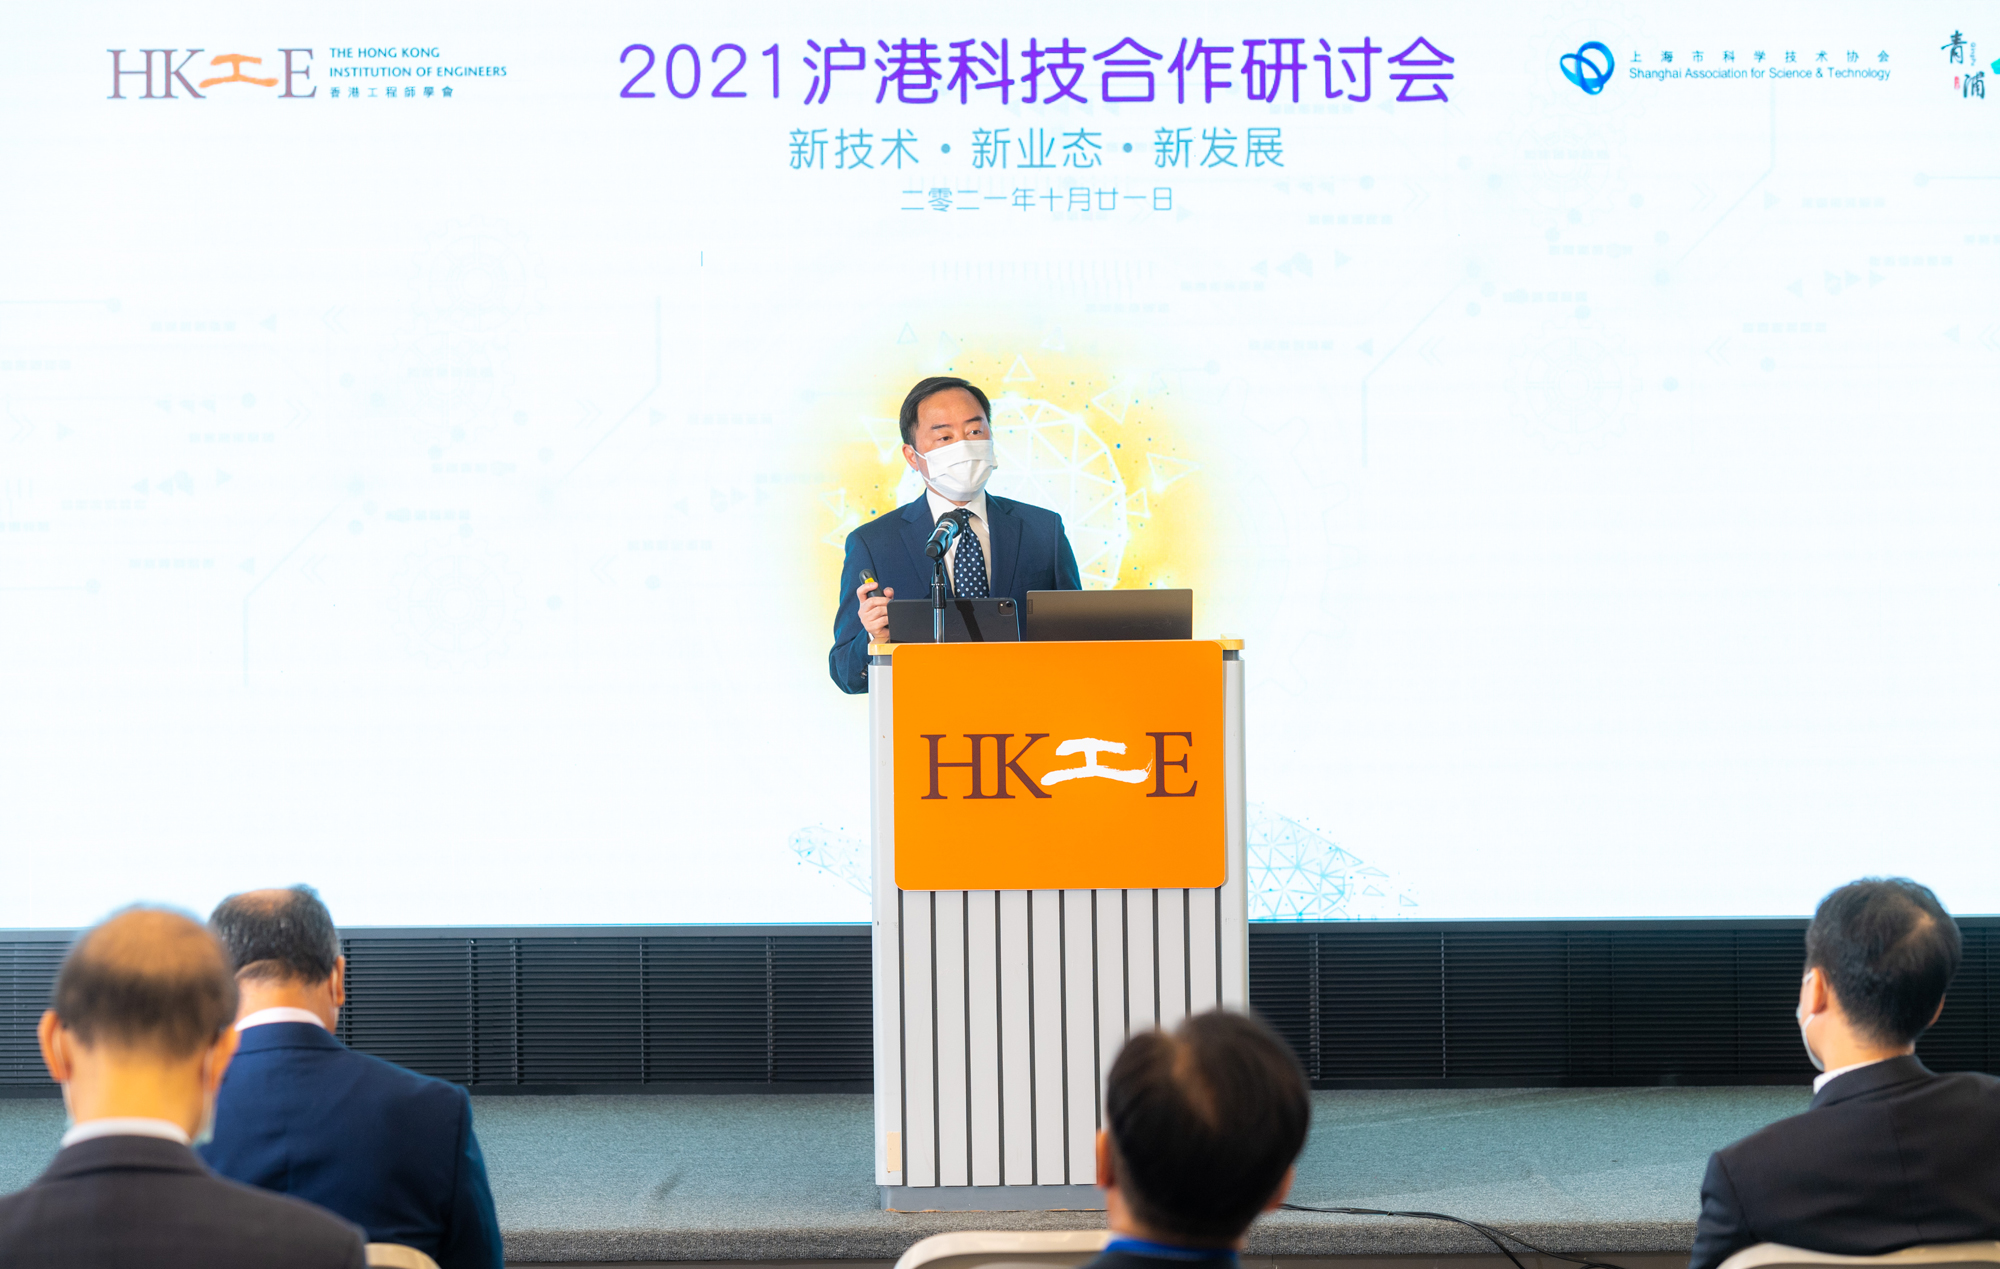 副政府资讯科技总监黄志光先生于「2021沪港科技合作研讨会」致辞